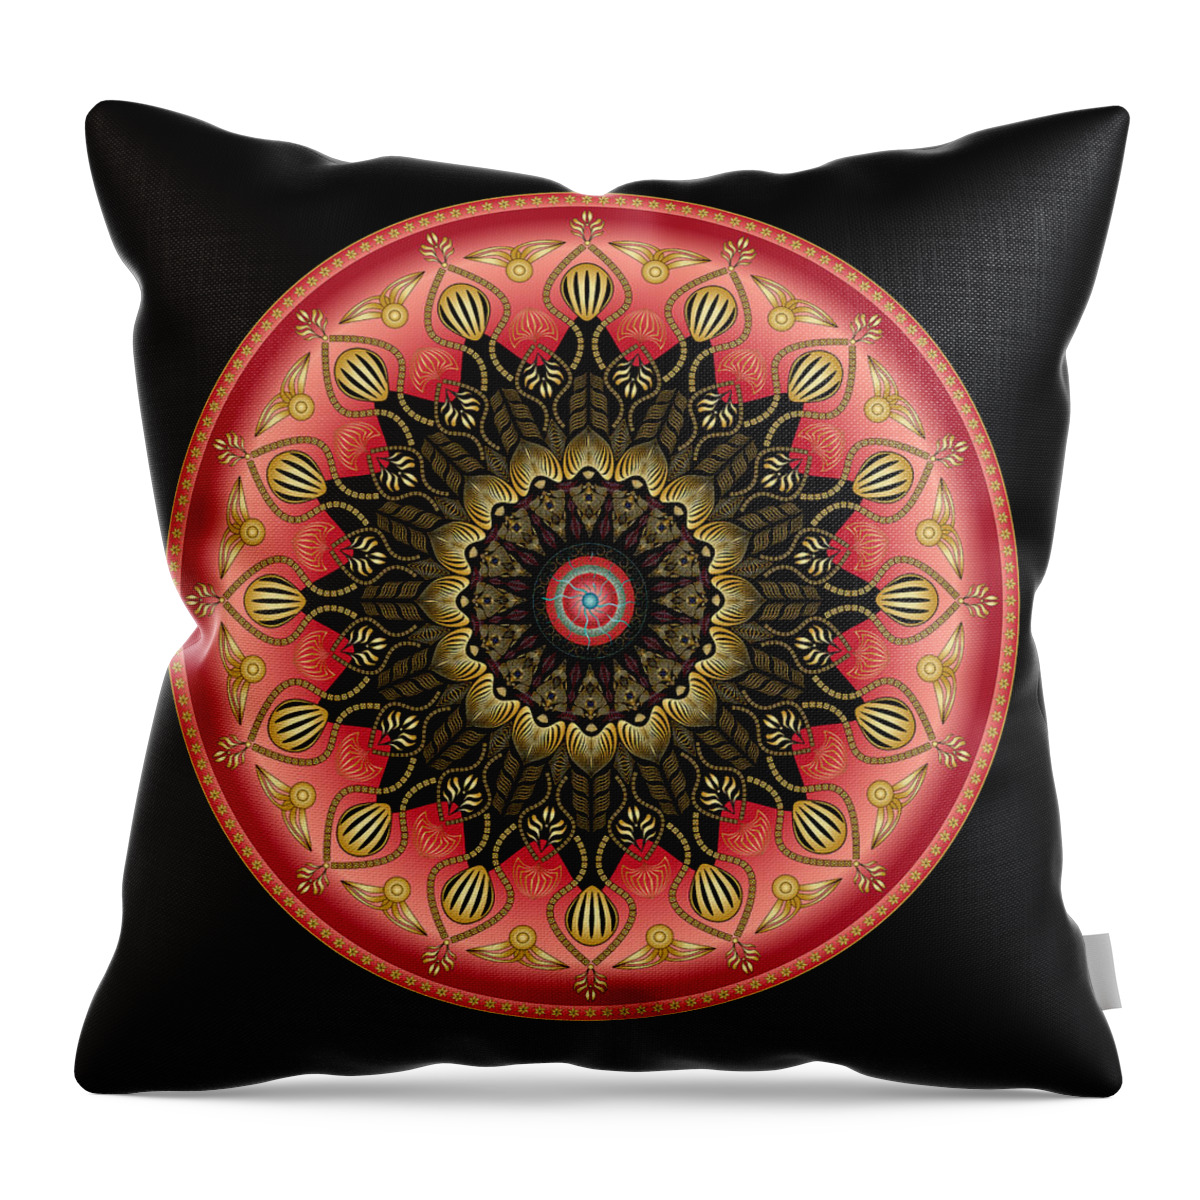 Mandala Throw Pillow featuring the digital art Circularium No 2659 by Alan Bennington